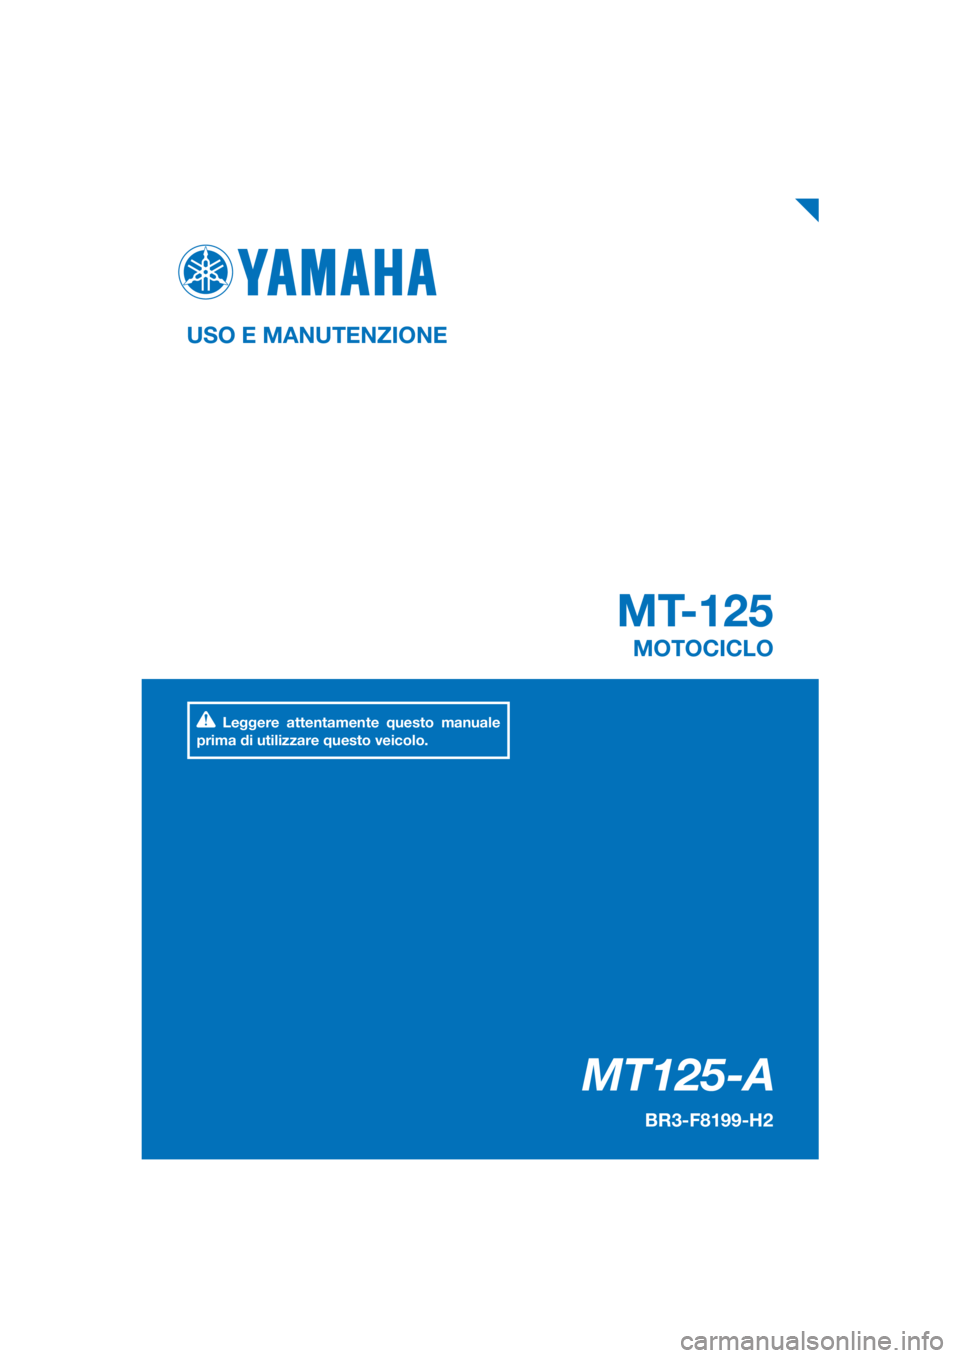 YAMAHA MT-125 2018  Manuale duso (in Italian) PANTONE285C
MT125-A
MT-125
USO E MANUTENZIONE
BR3-F8199-H2
MOTOCICLO
Leggere attentamente questo manuale 
prima di utilizzare questo veicolo.
[Italian  (H)] 